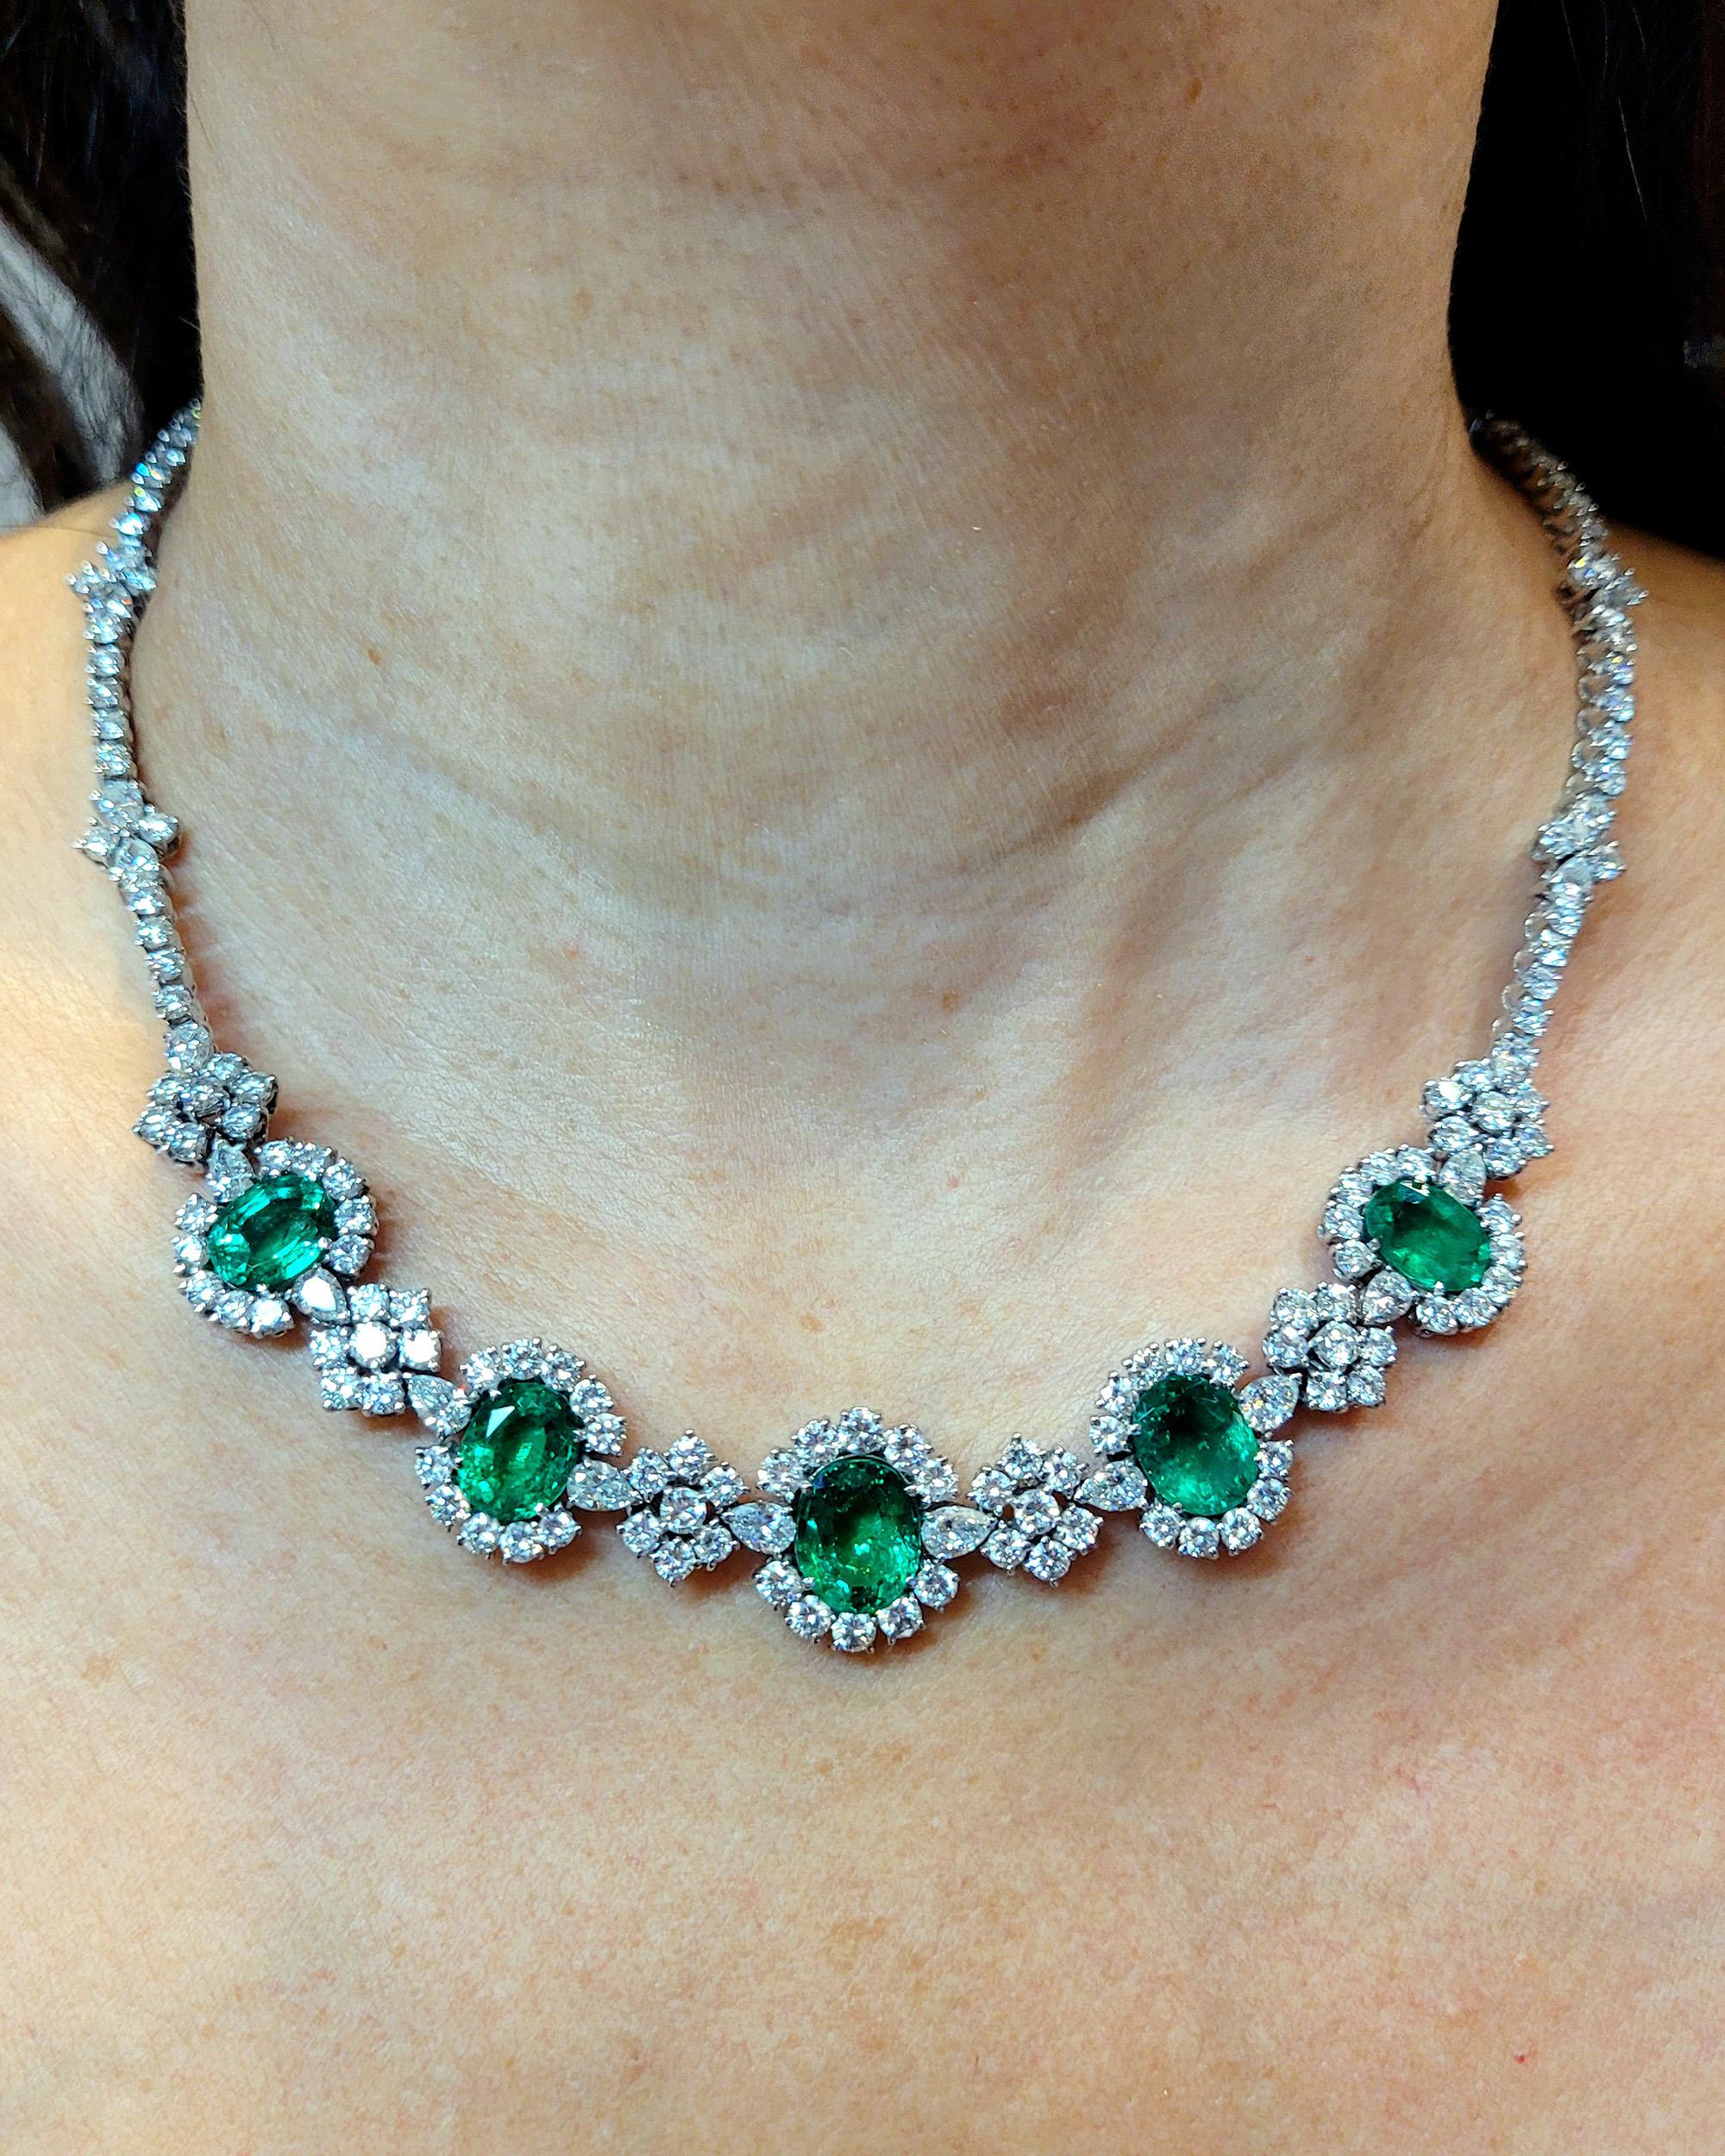 Die wunderschöne grüne Farbe des Smaragds fasziniert, beruhigt und begeistert seit den Zeiten Kleopatras. Die Königin des alten Ägyptens liebte es, die Steine für üppigen Schmuck zu verwenden, und betrachtete die grünen Edelsteine auch als heilige